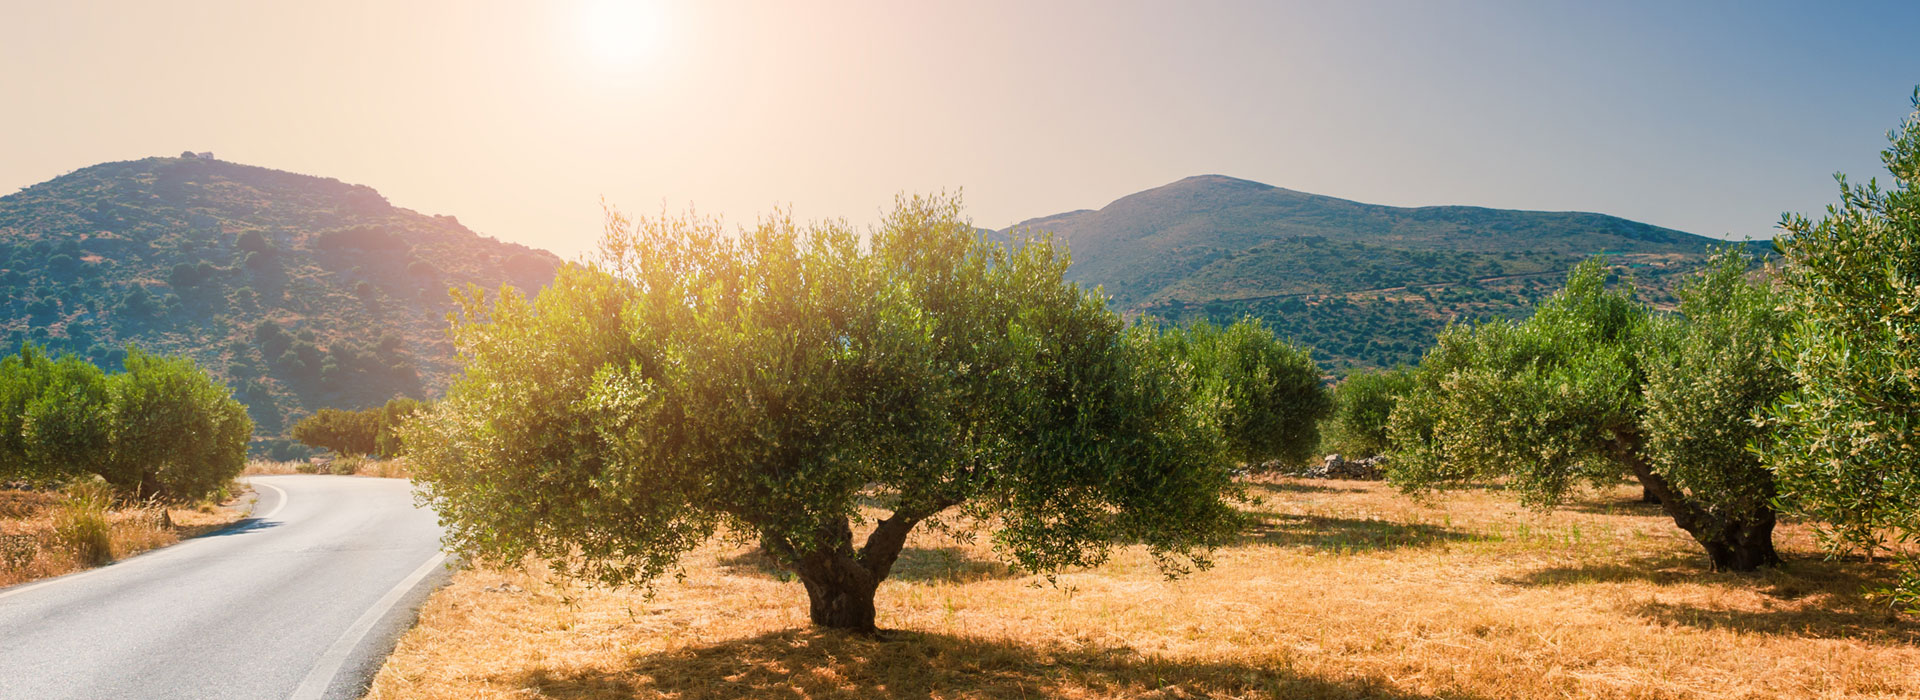 Valavanis oliveoil